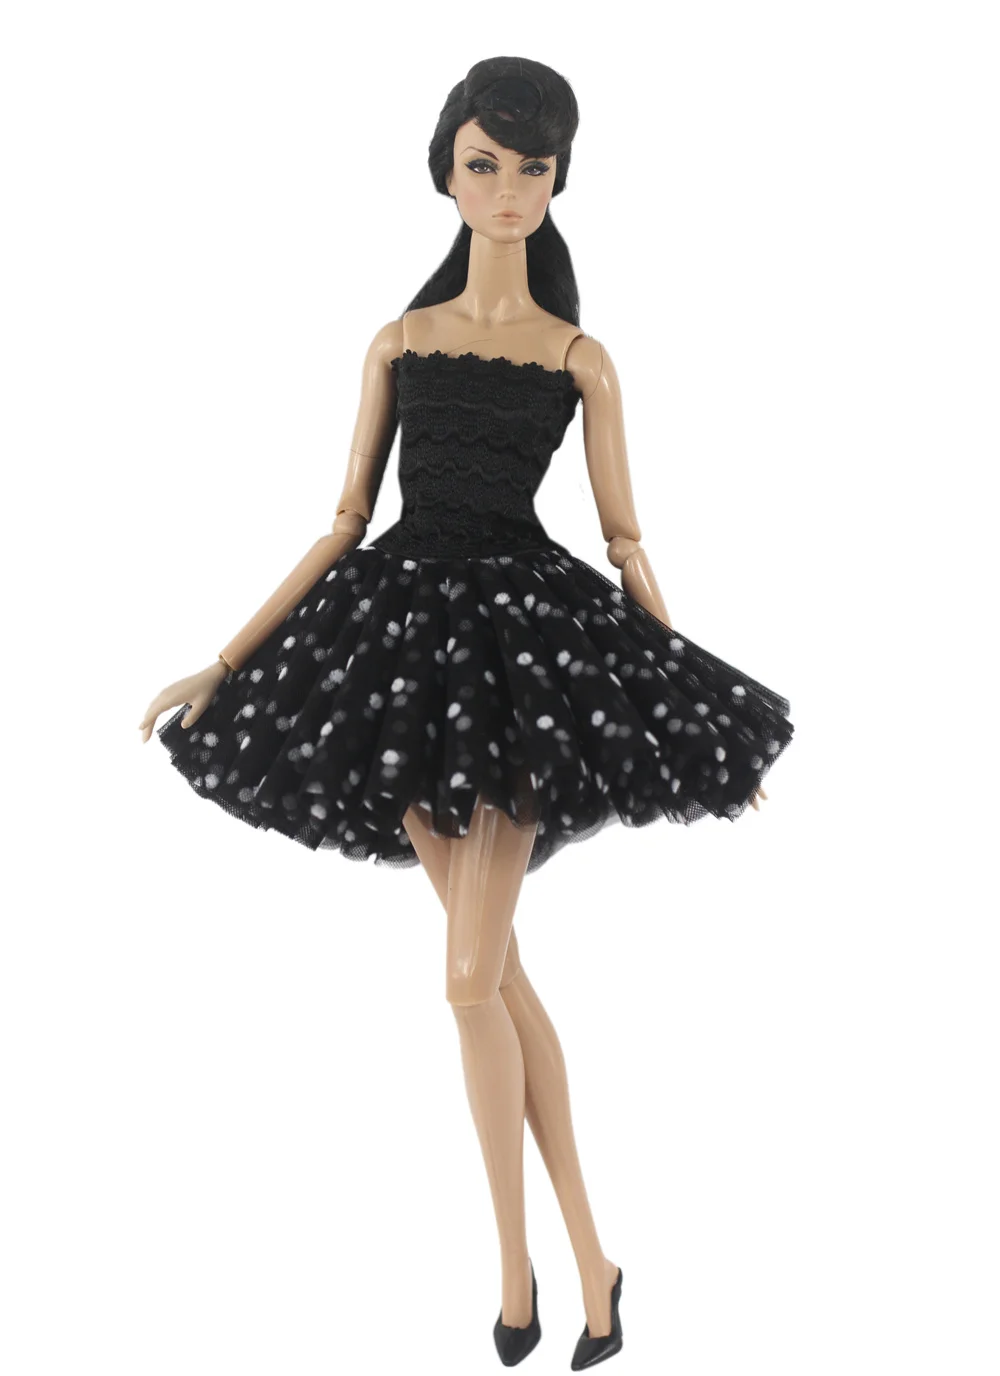 Одежда BABI ручной работы, балетное платье для кукольной одежды 11,5 дюймов 30 см, множество стильных подарков для кукольных аксессуаров BABI 03